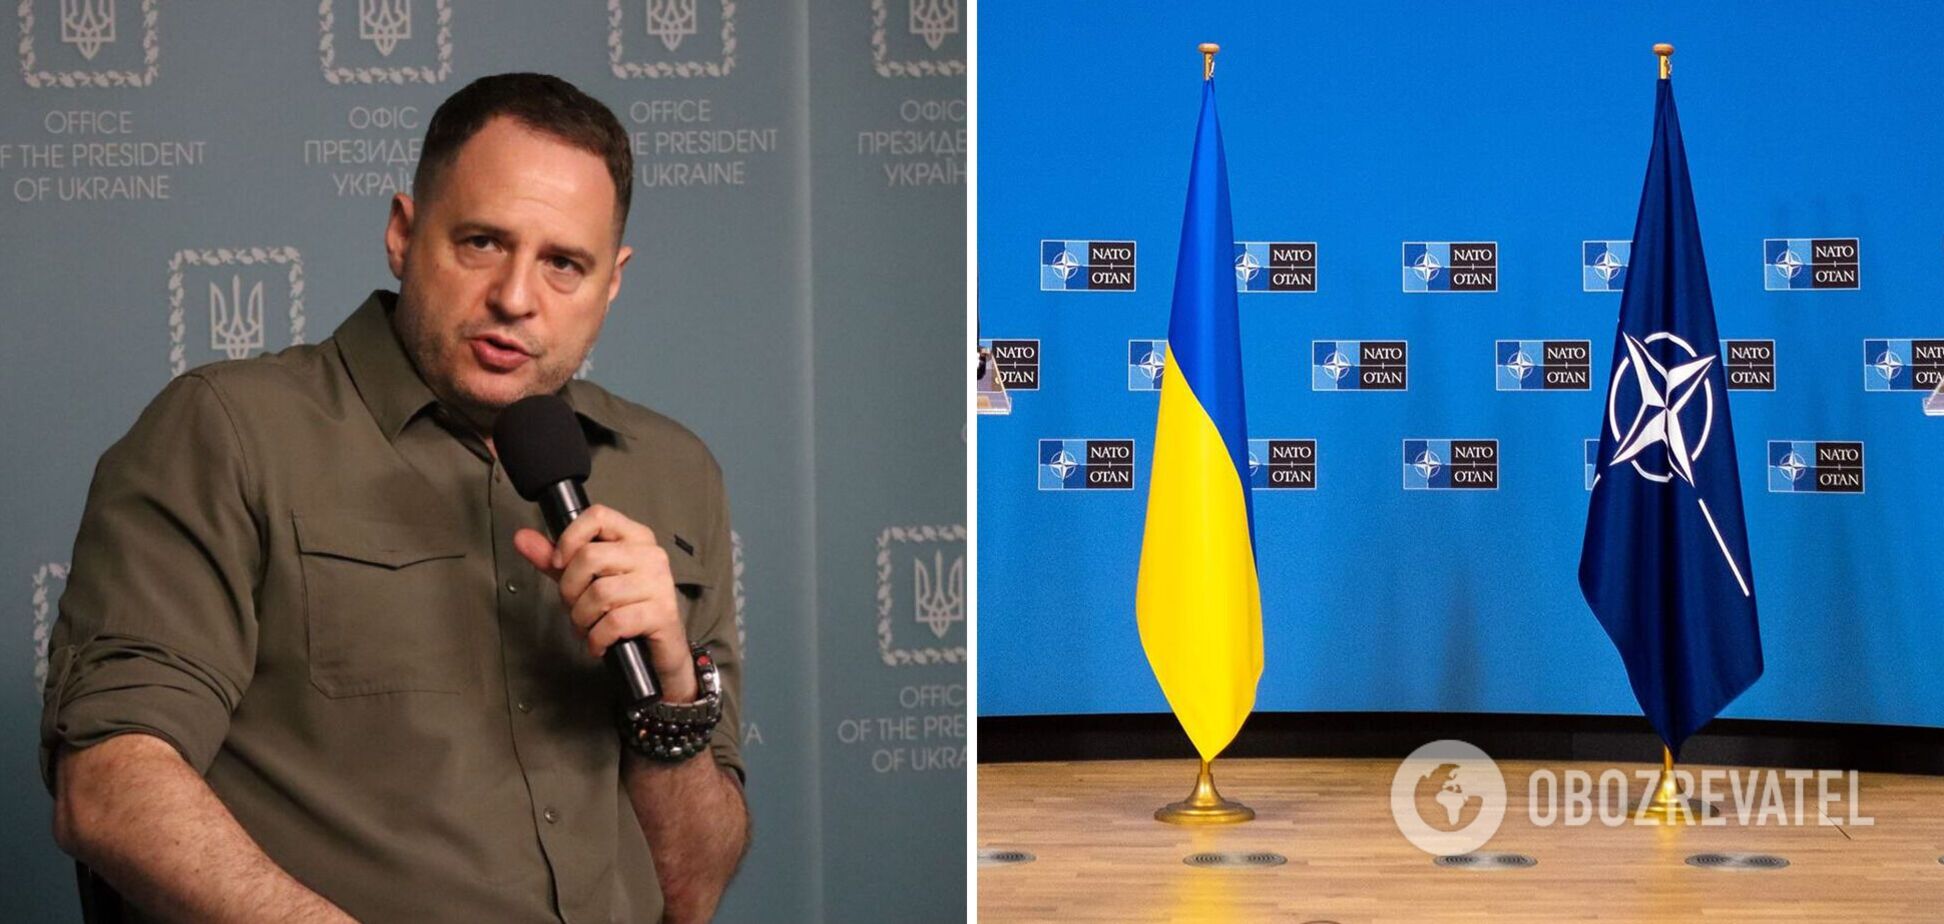 ОП: Украина начнет переговоры с США о предоставлении гарантий безопасности